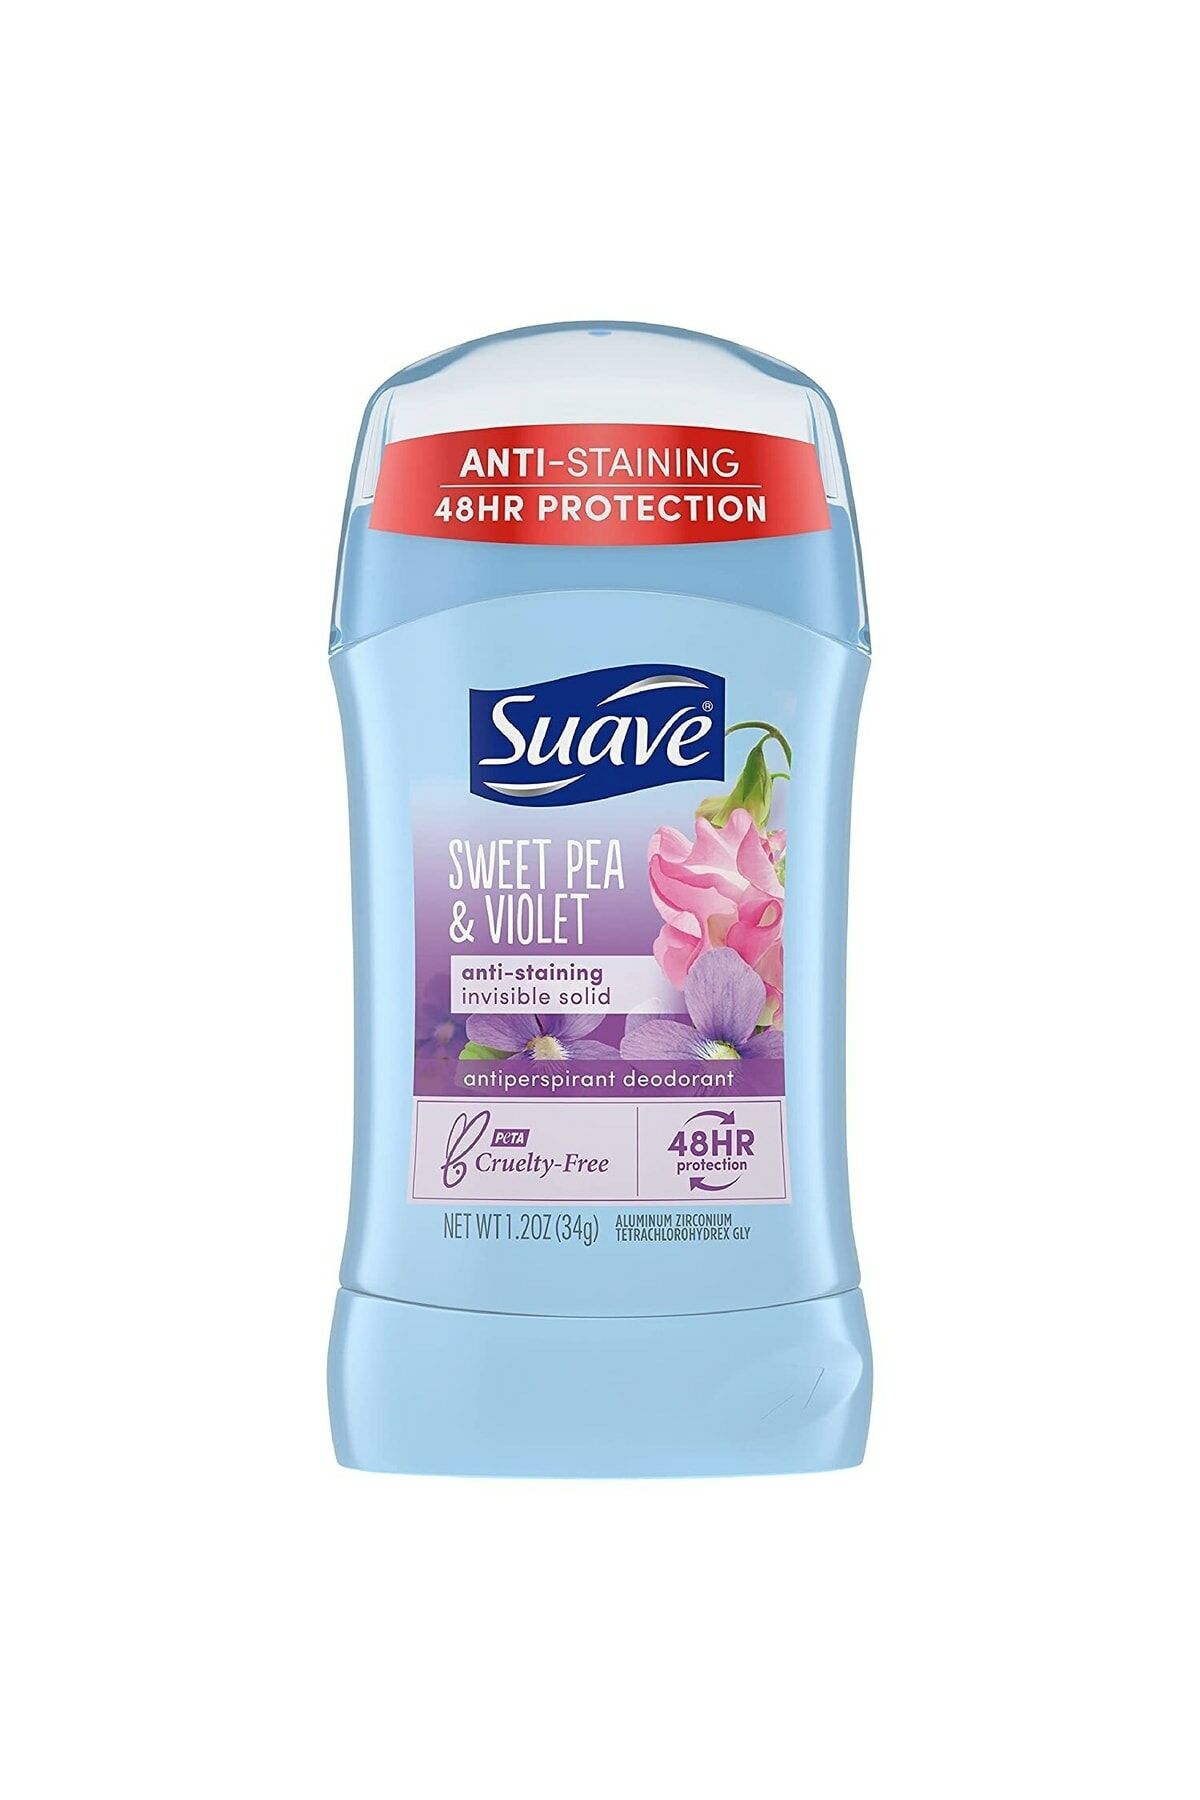 Suave Sweet Pea And Violet (kadınlar Için Tatlı Menekşe) Deodorant